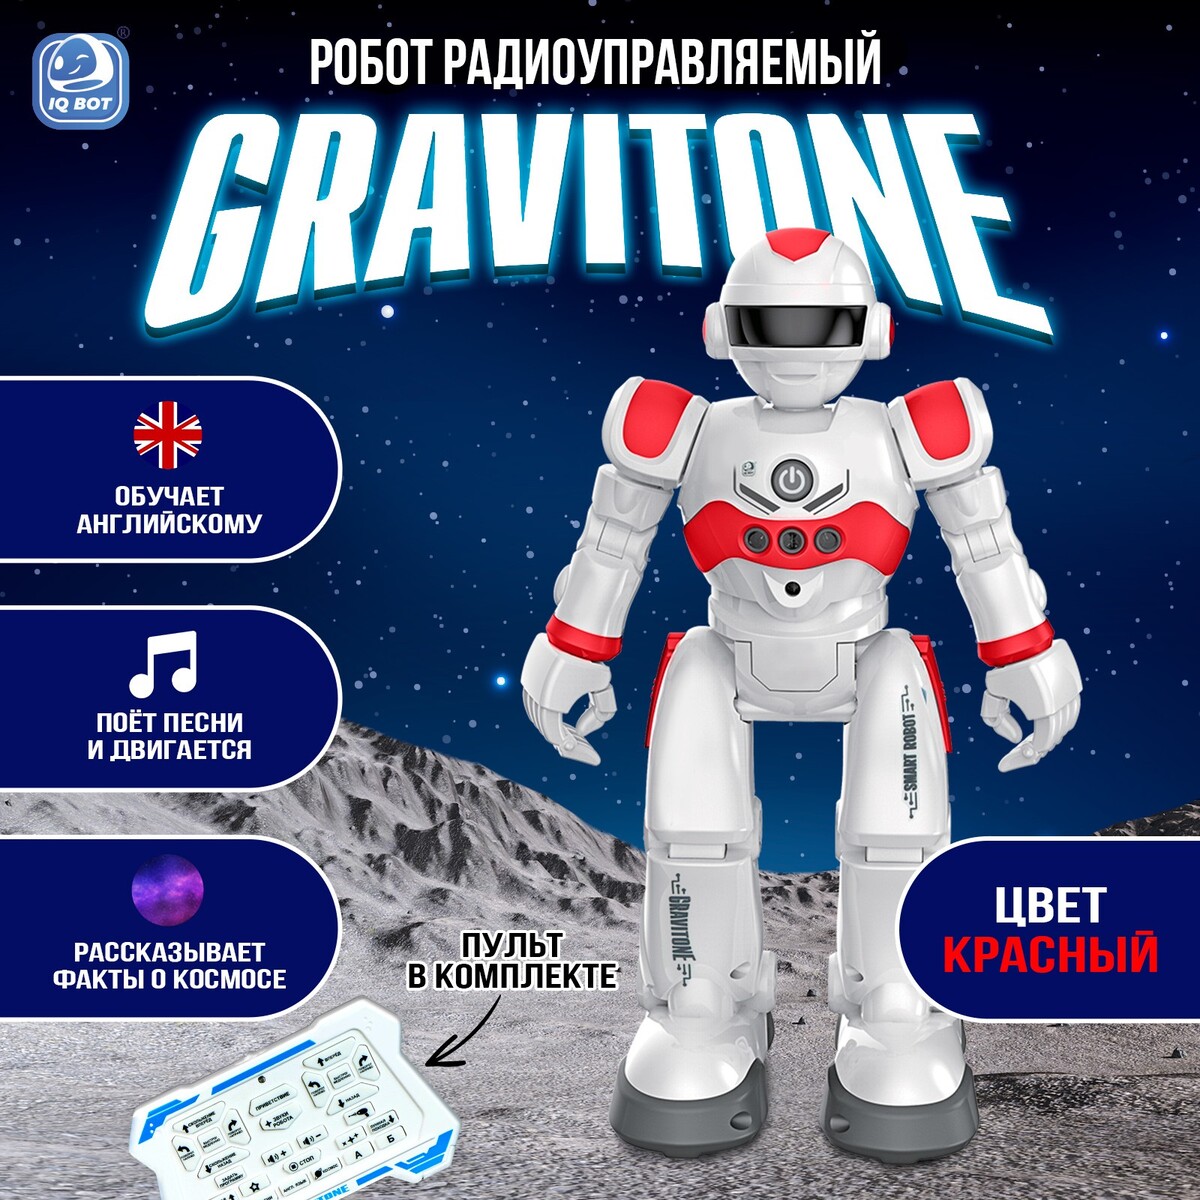 Робот радиоуправляемый iq bot gravitone, русское озвучивание, цвет красный русское окно